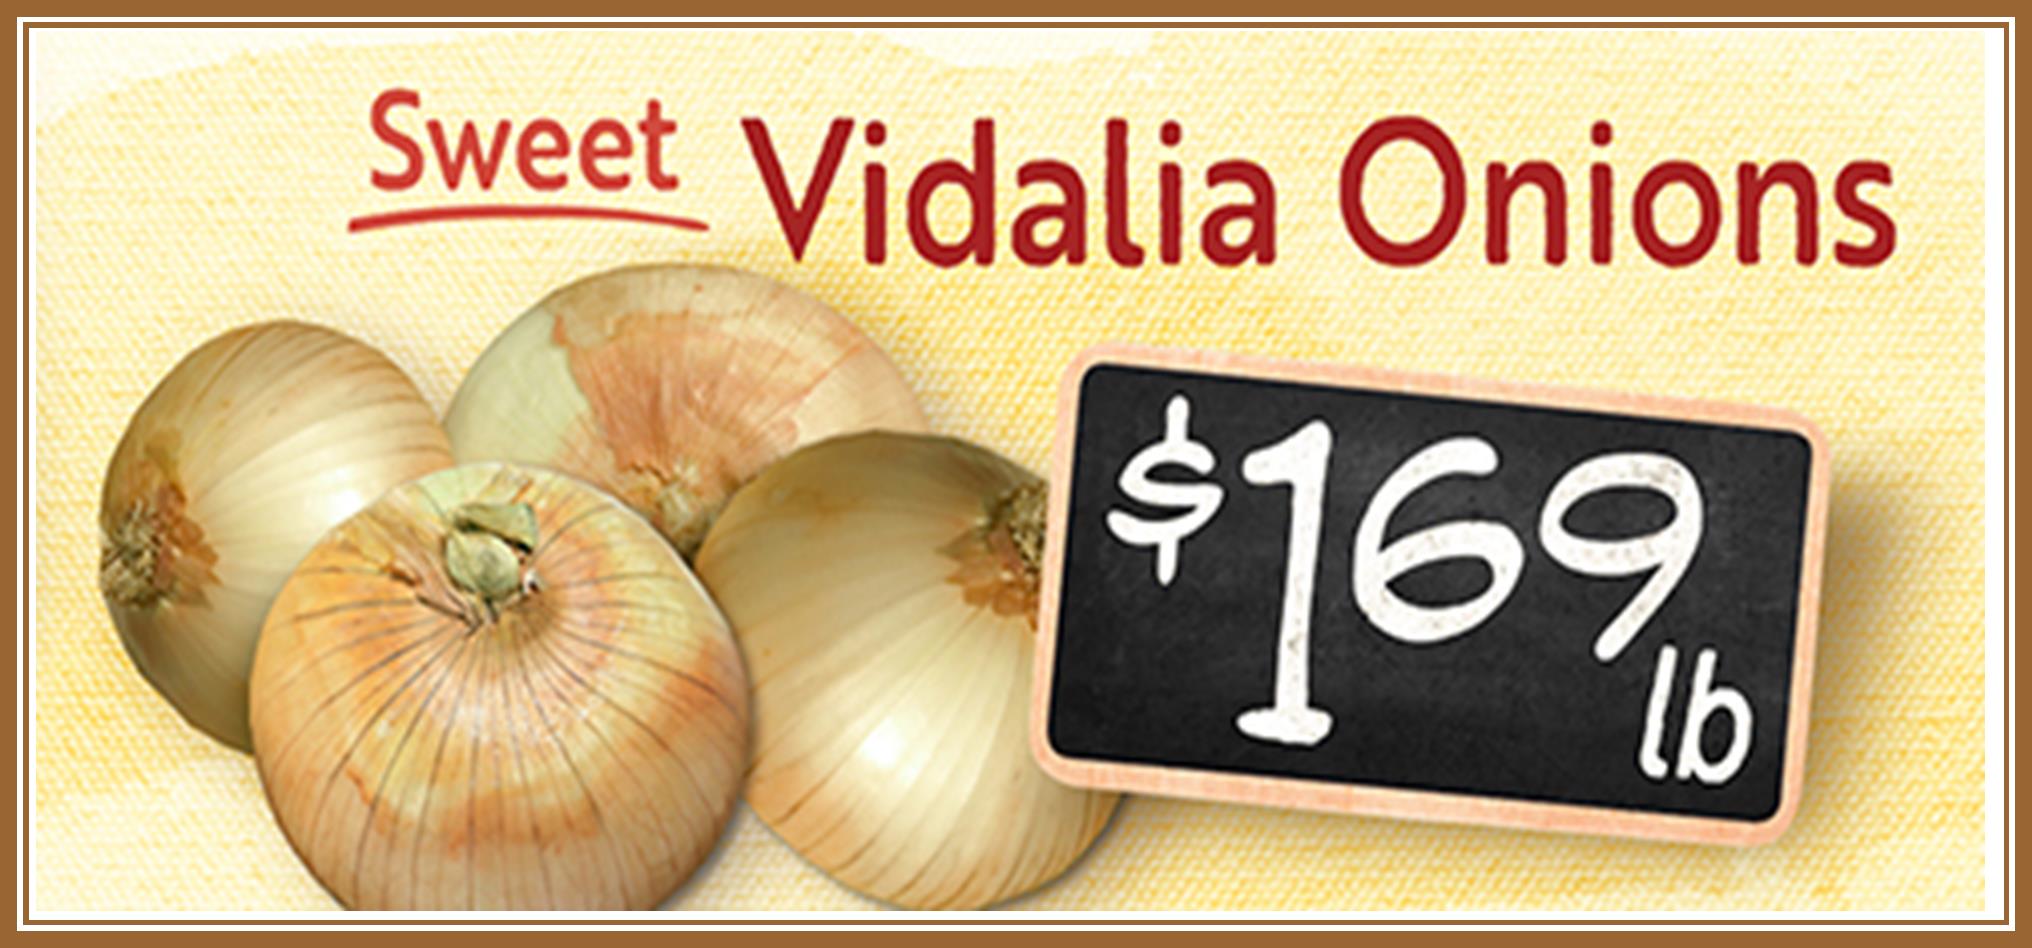 Onions Vidalia 169.jpg